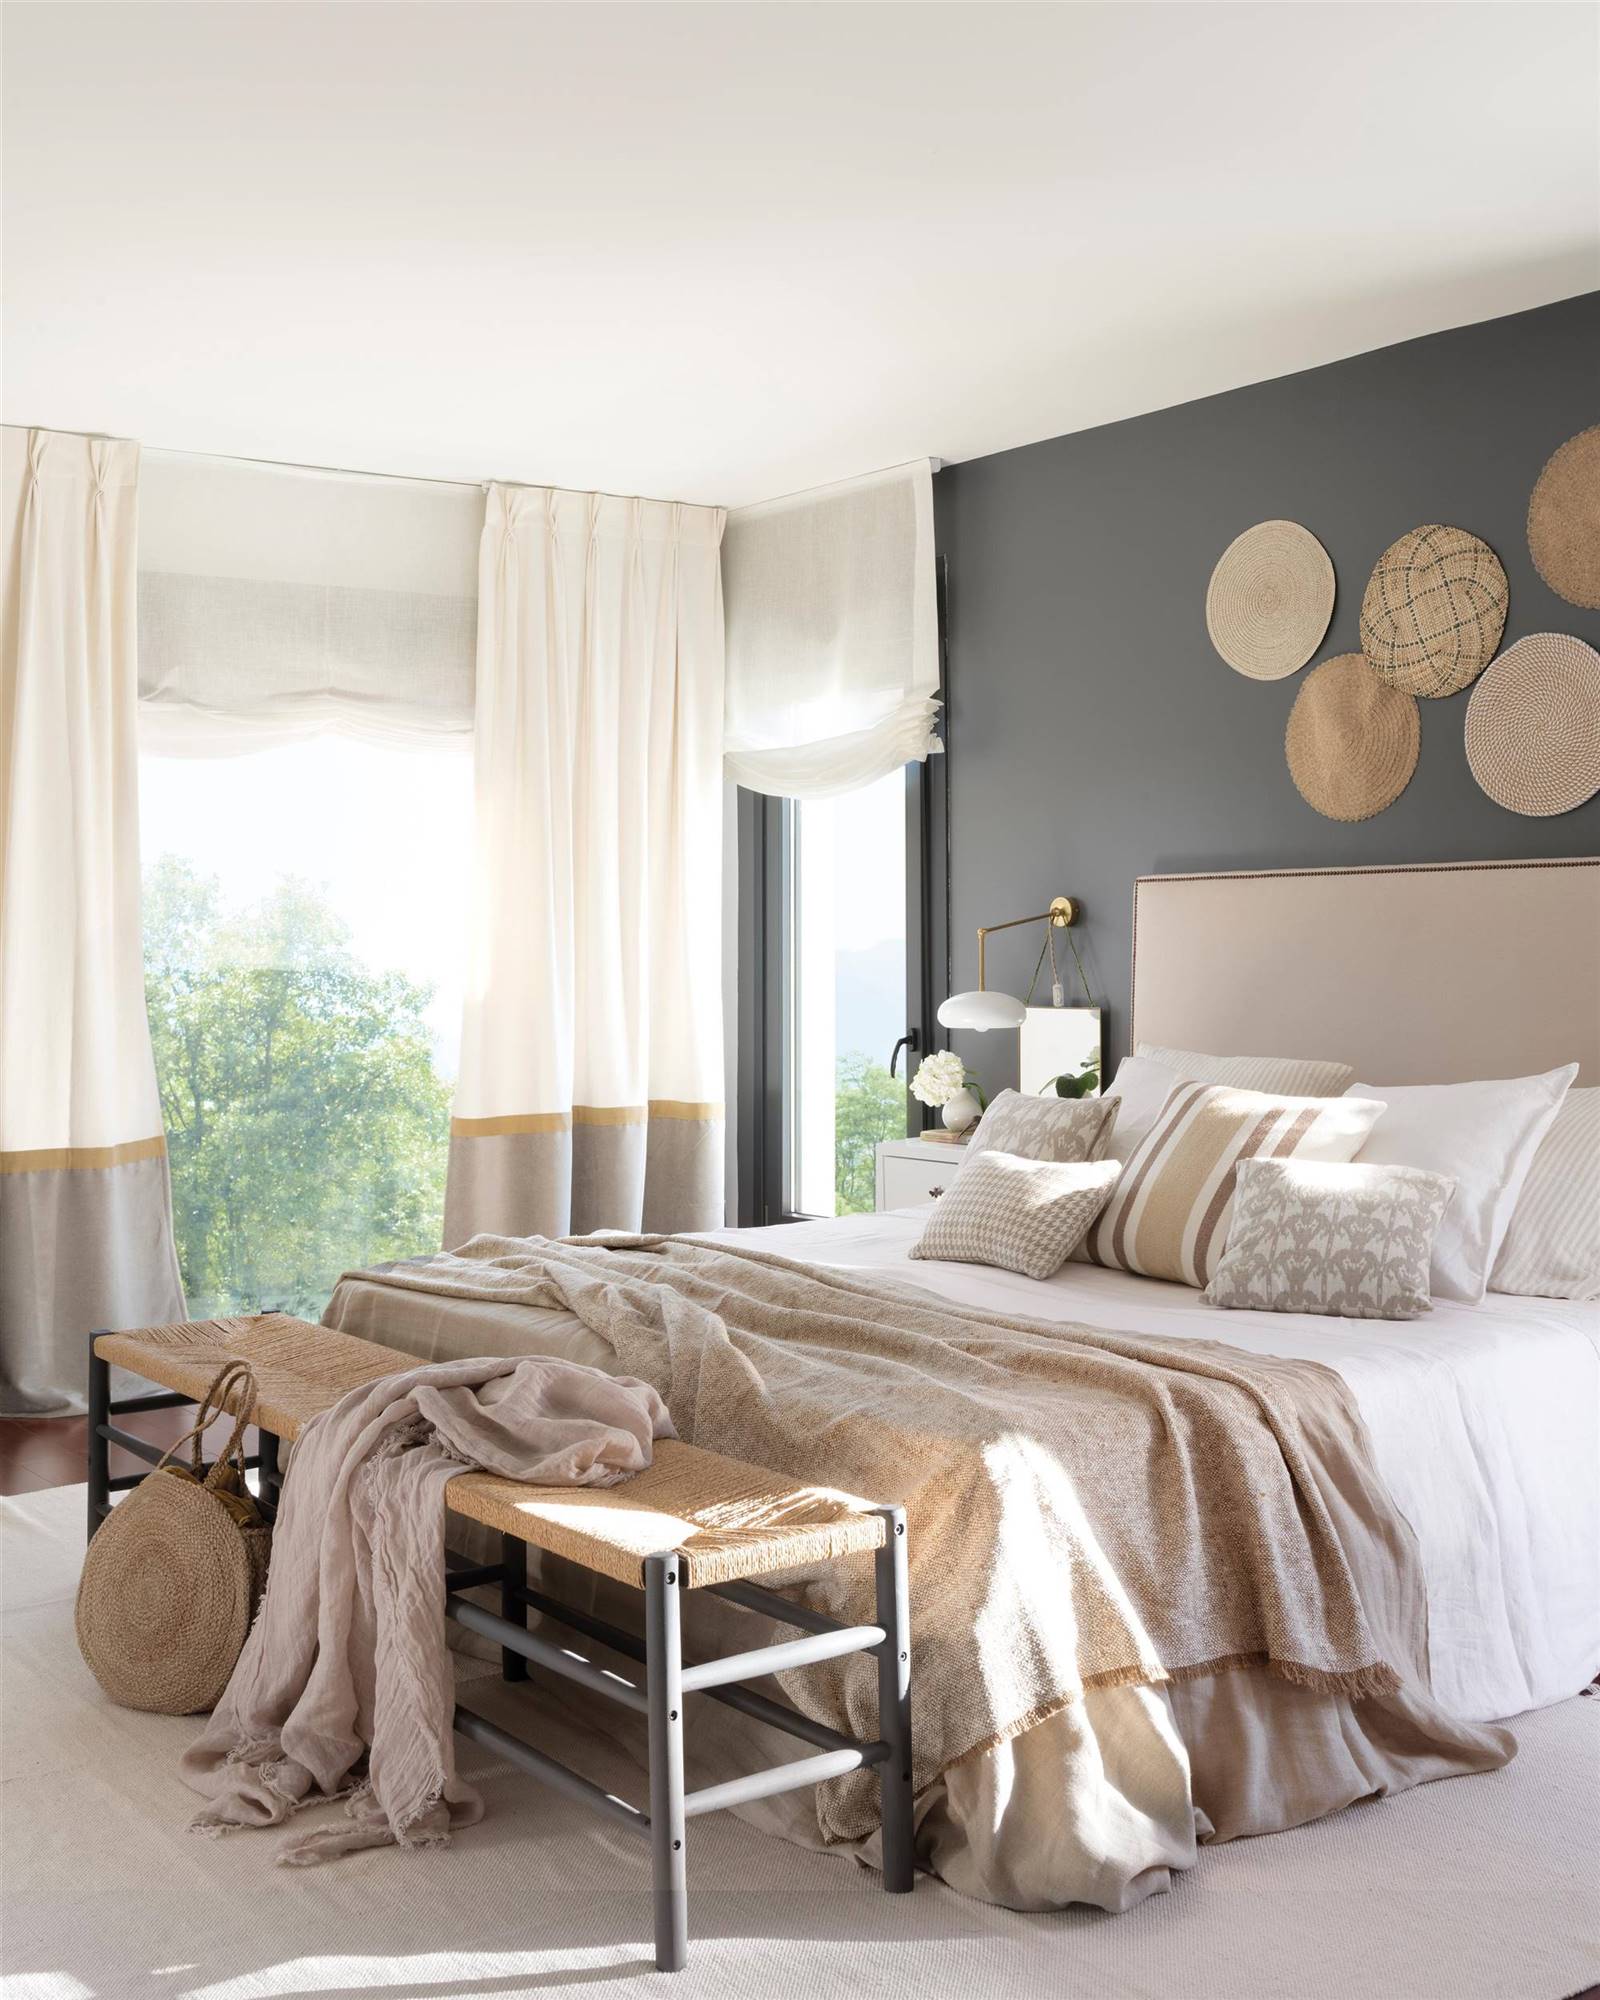 Dormitorio de estilo scandi con pared del cabecero en gris con adornos de fibra. 